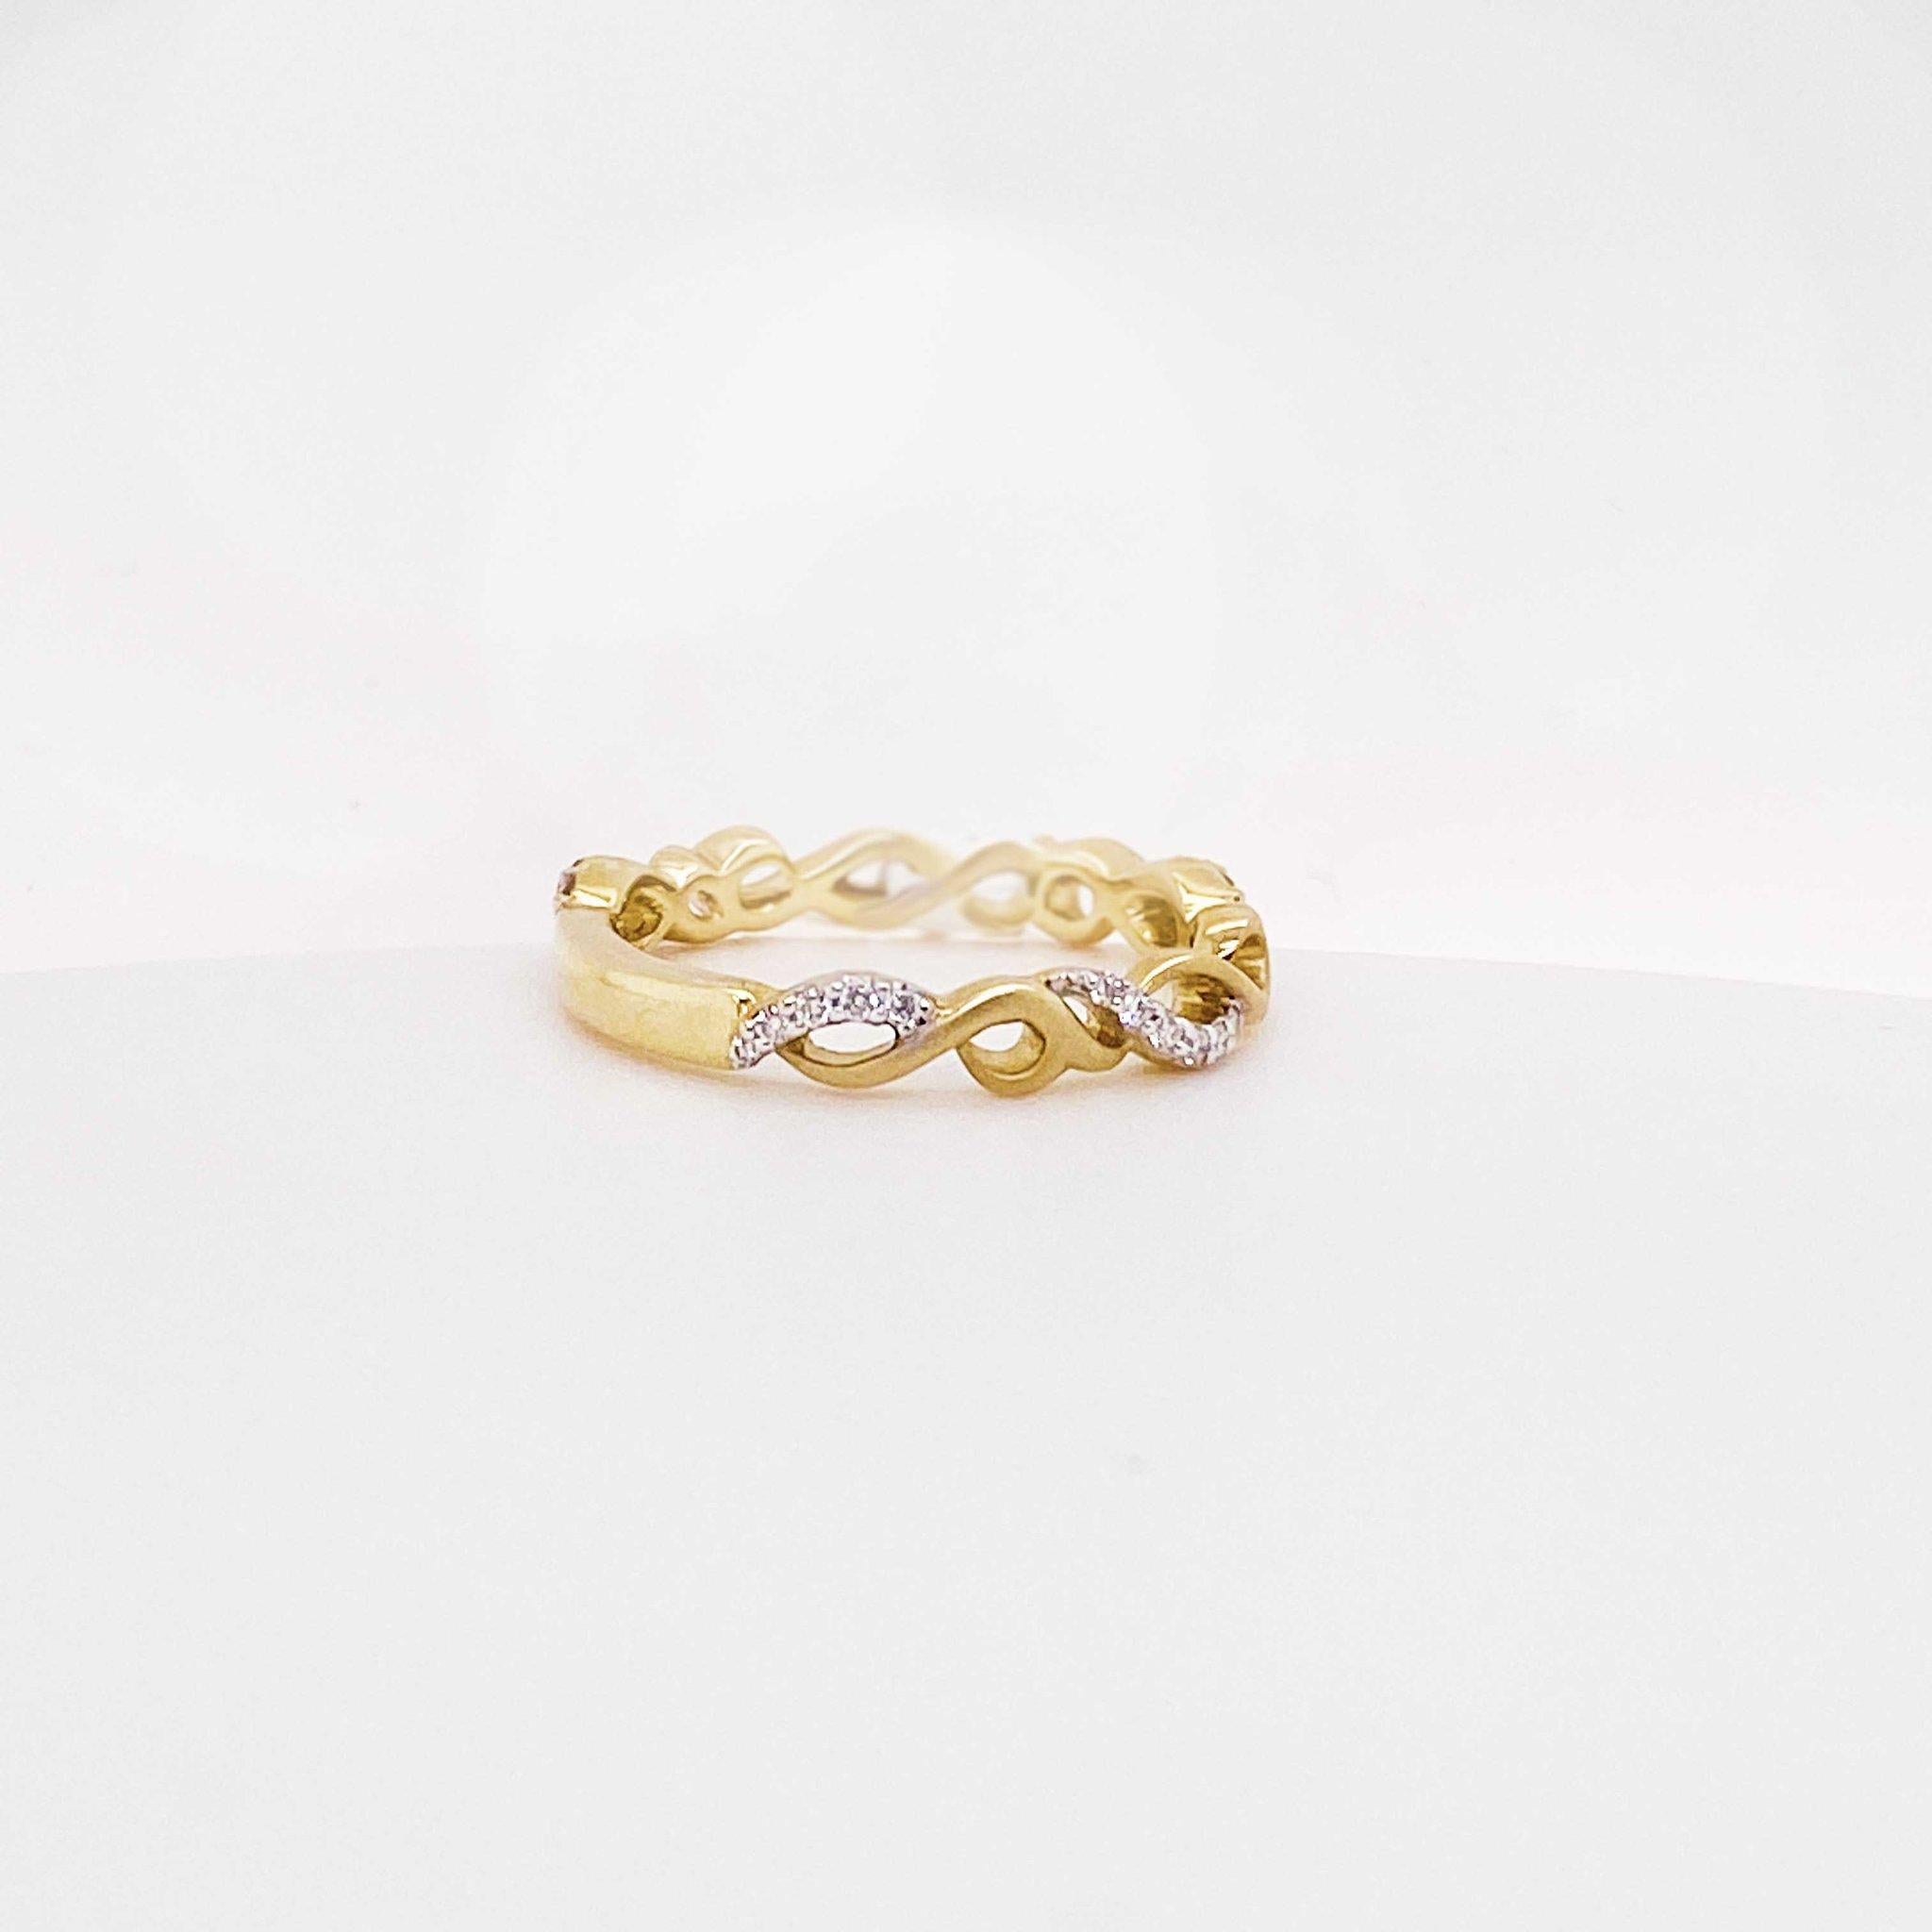 Bracelet mode infini en diamant ! Ce bracelet en diamants présente un motif d'infini symbolisant l'amour éternel. Cet anneau en diamant serait l'anneau de mariage le plus parfait ou un ajout à toute collection d'anneaux empilables ! 

Qualité du